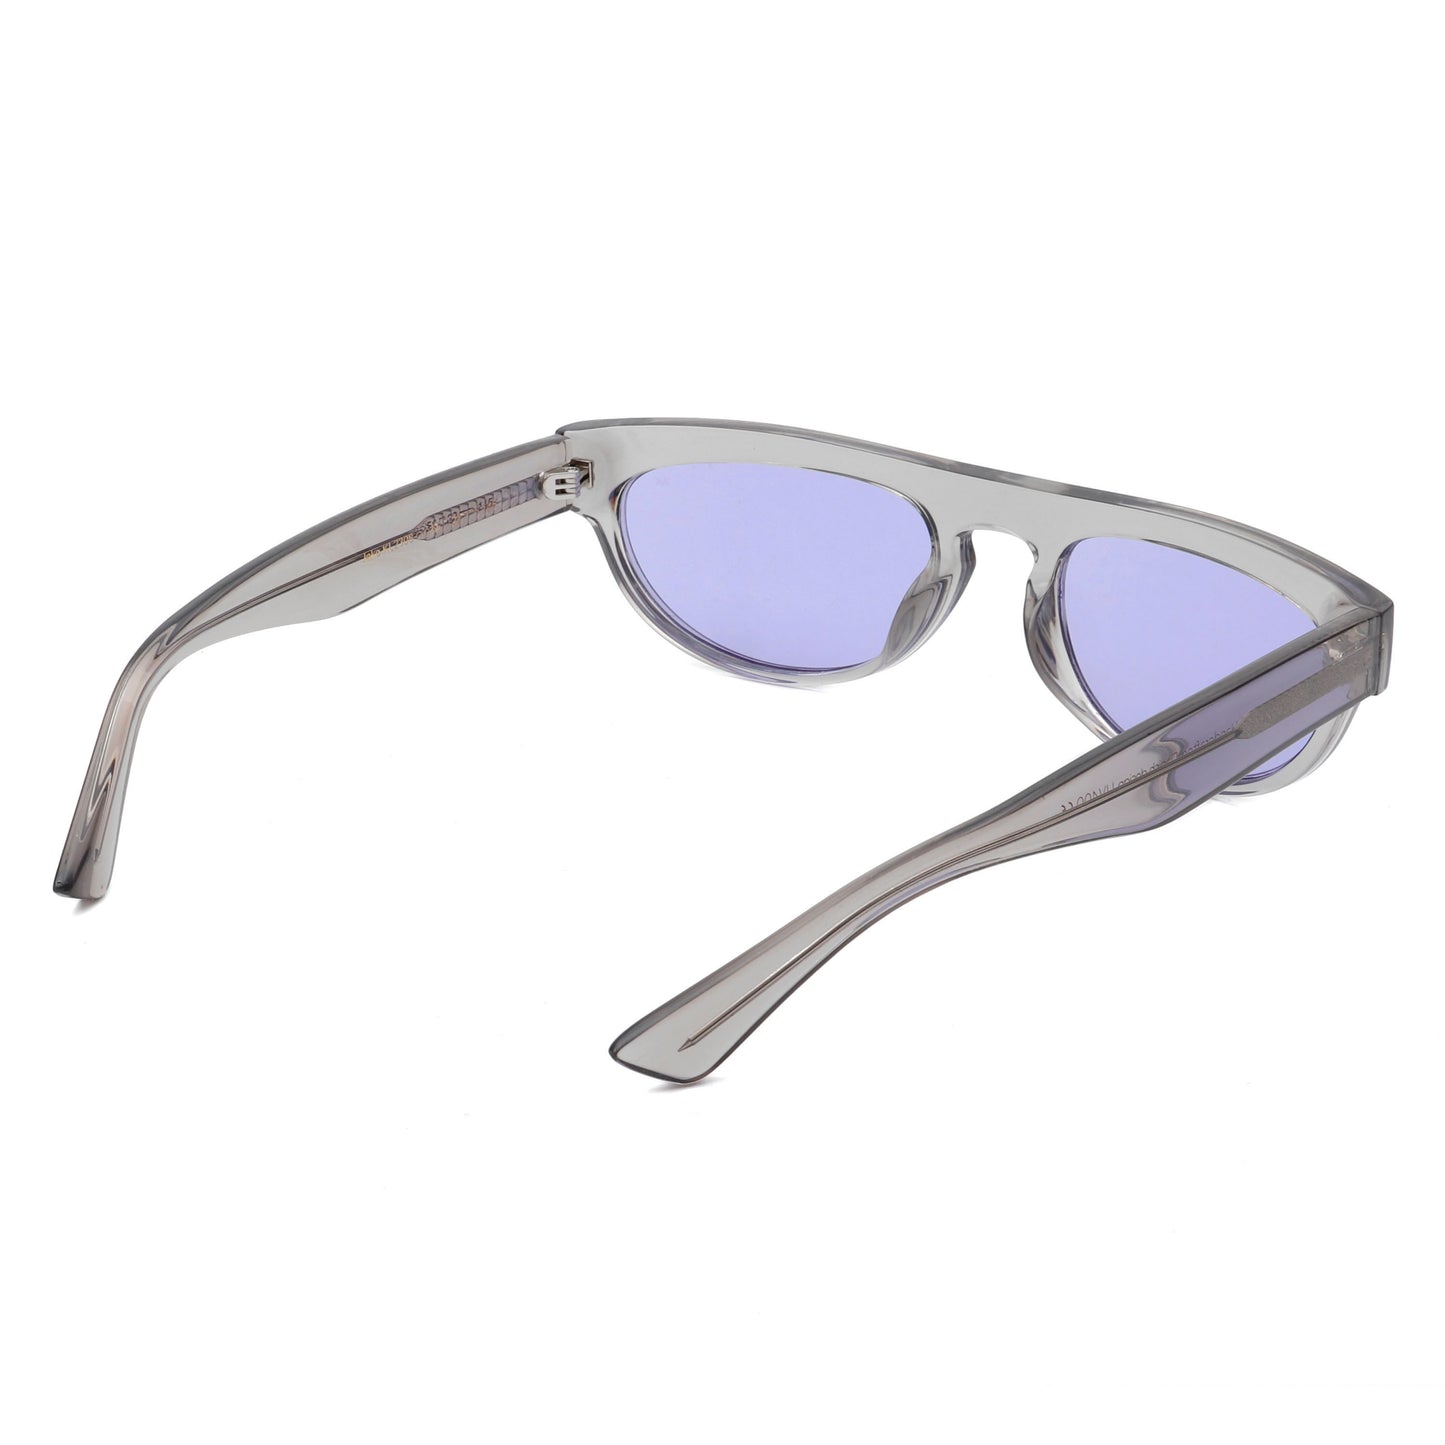 A.Kjaerbede Jake Sunglasses in Grey Transparent color